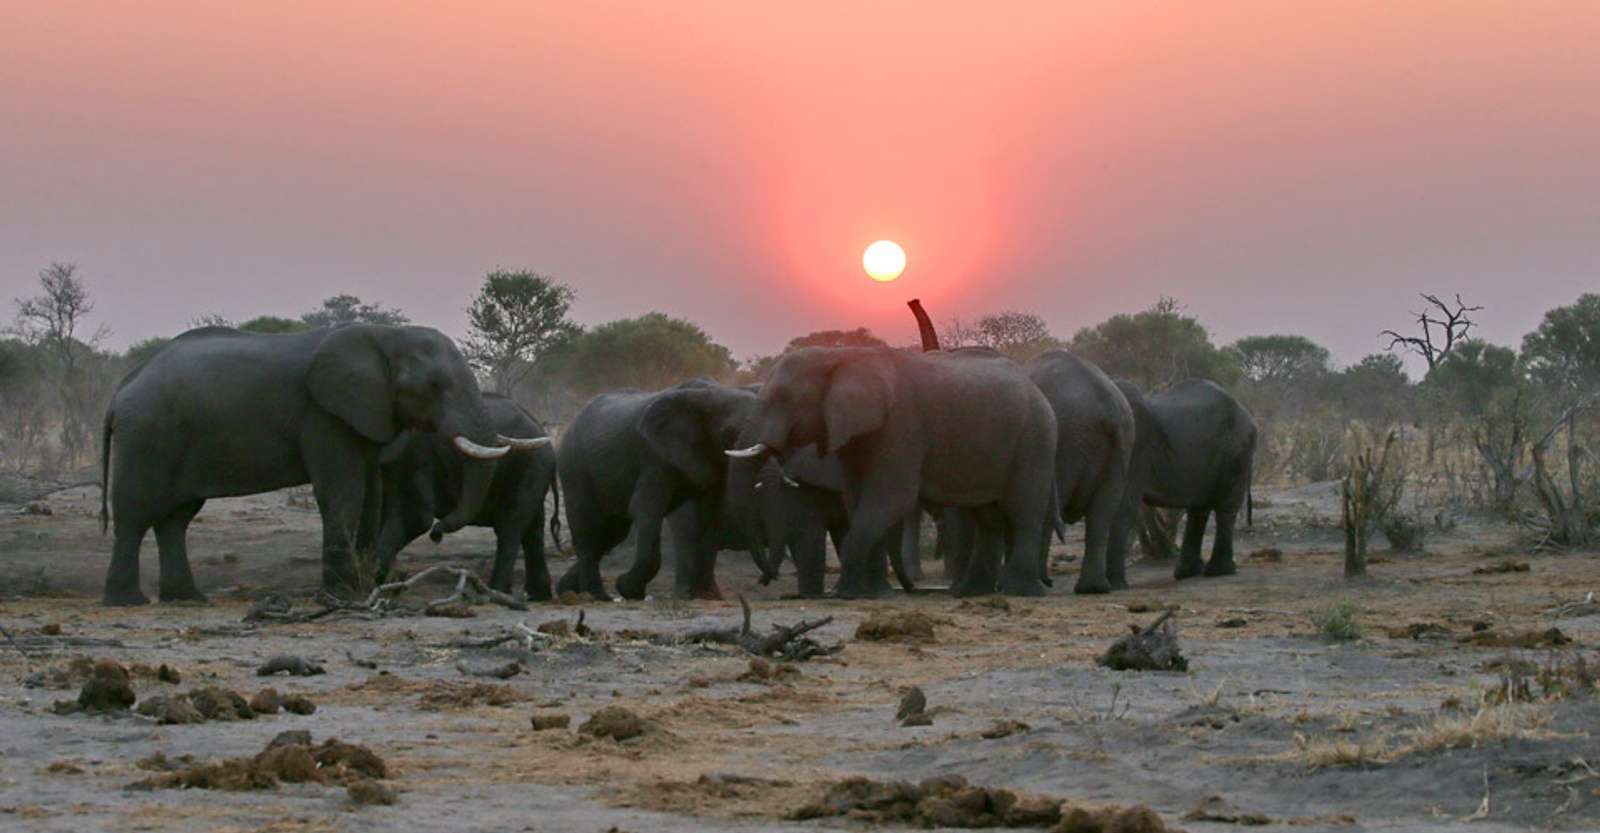 Elephants at sunset, Khwai Private Reserve, Botswana.